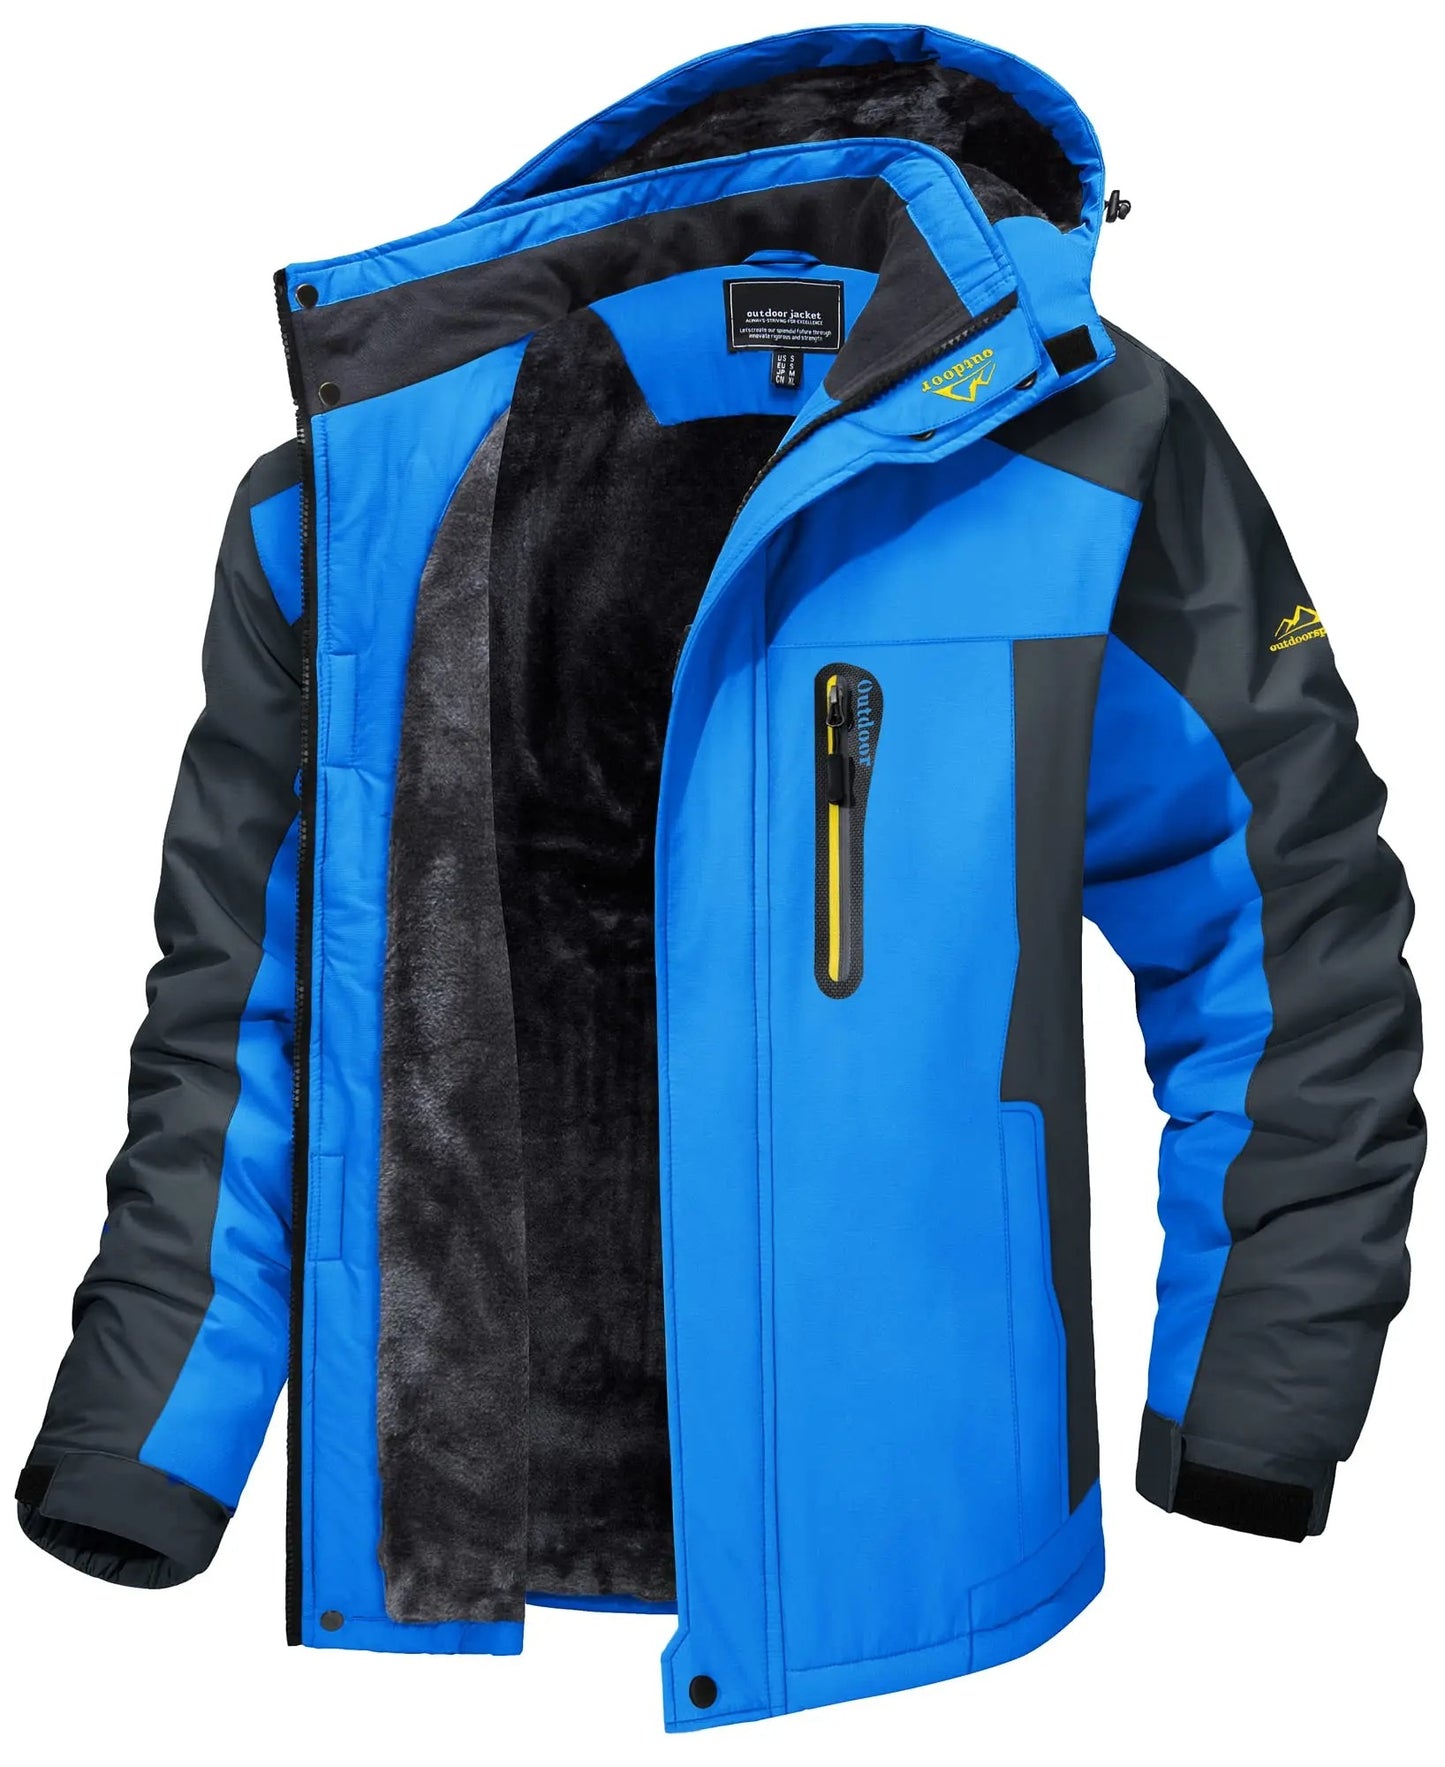 Sander™ - Wind and Waterproof Jacket (60% Off)